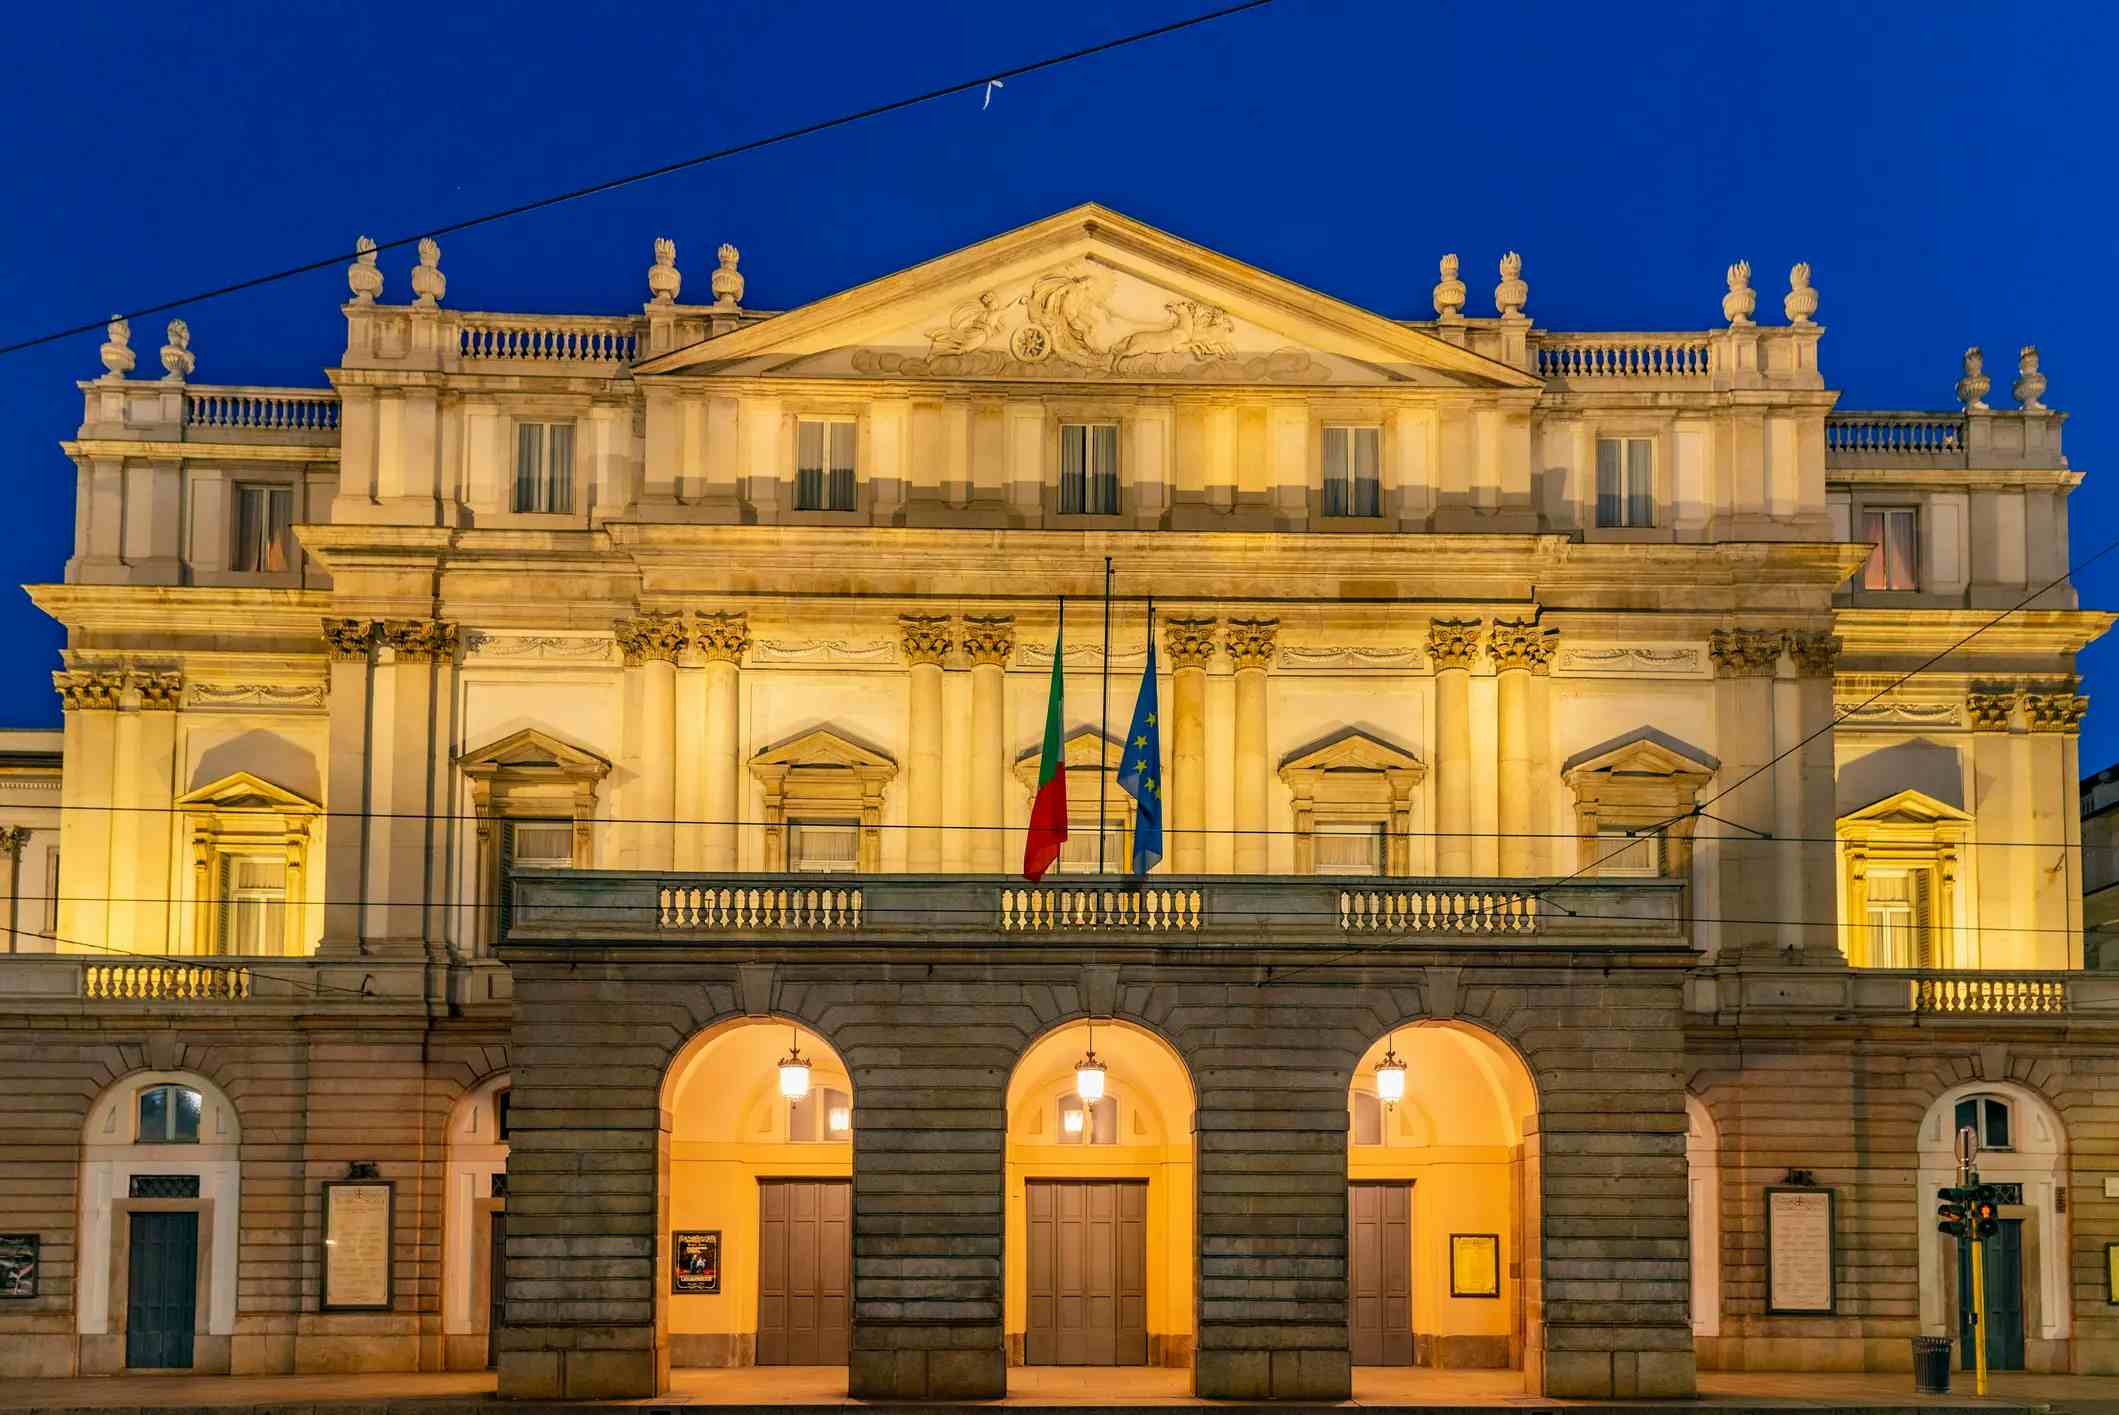 Teatro alla Scala image